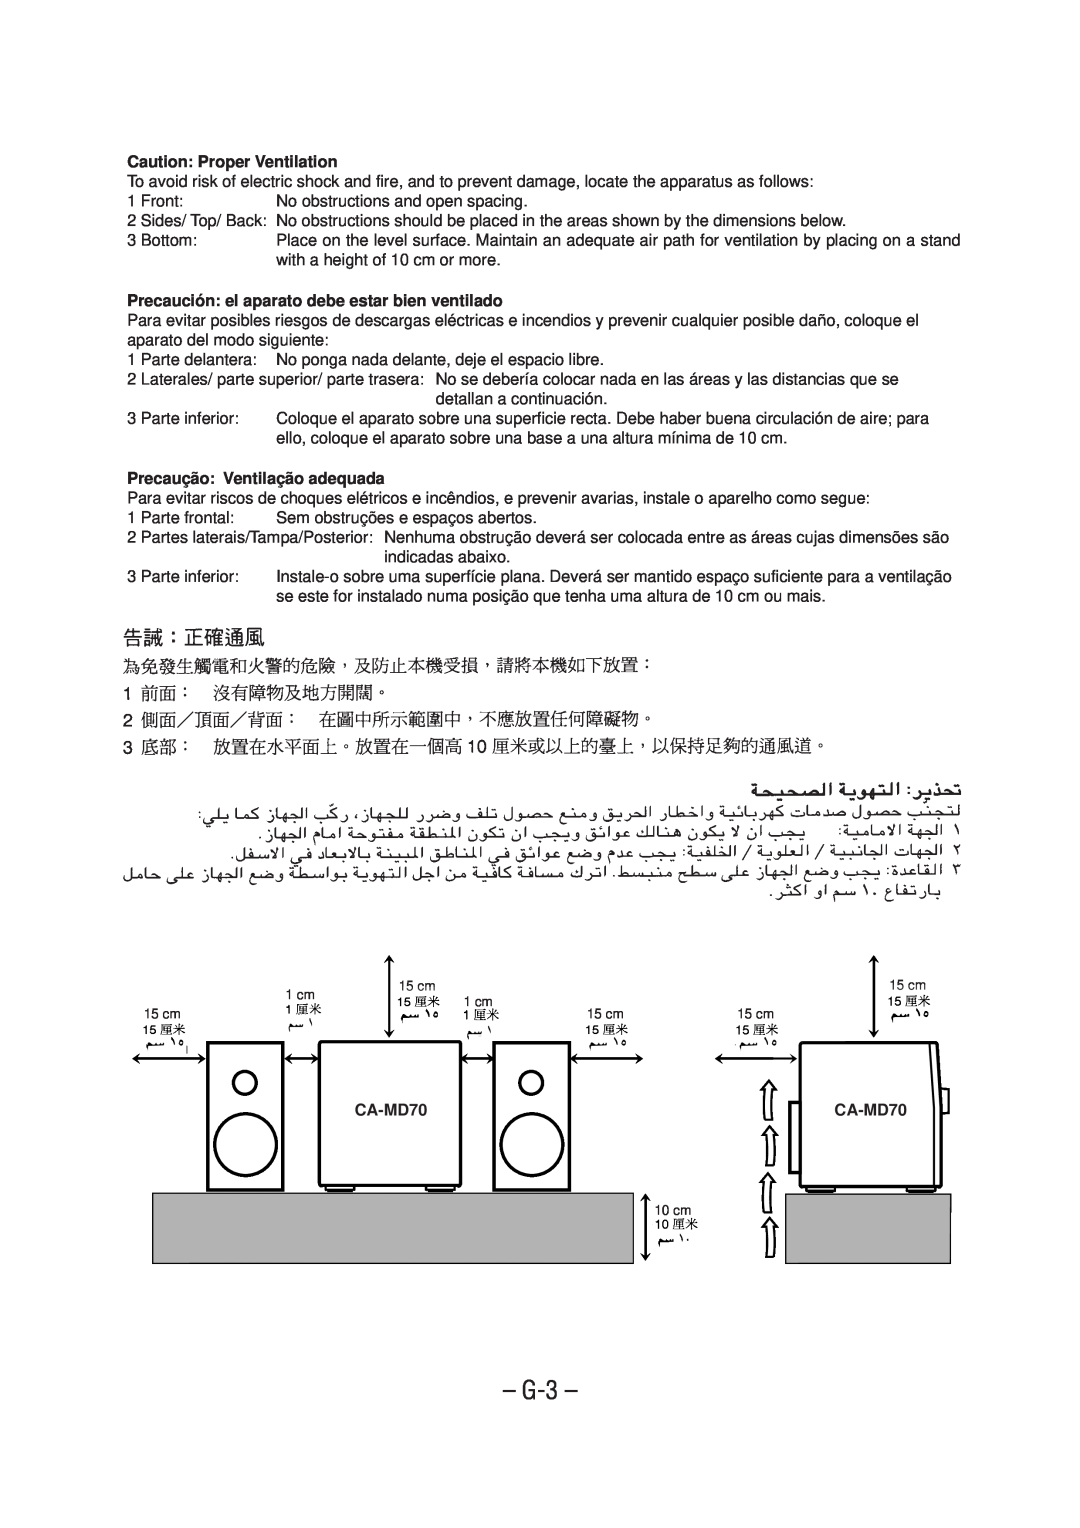 JVC CA-MD70 manual G-3, Caution Proper Ventilation, Precaución el aparato debe estar bien ventilado 